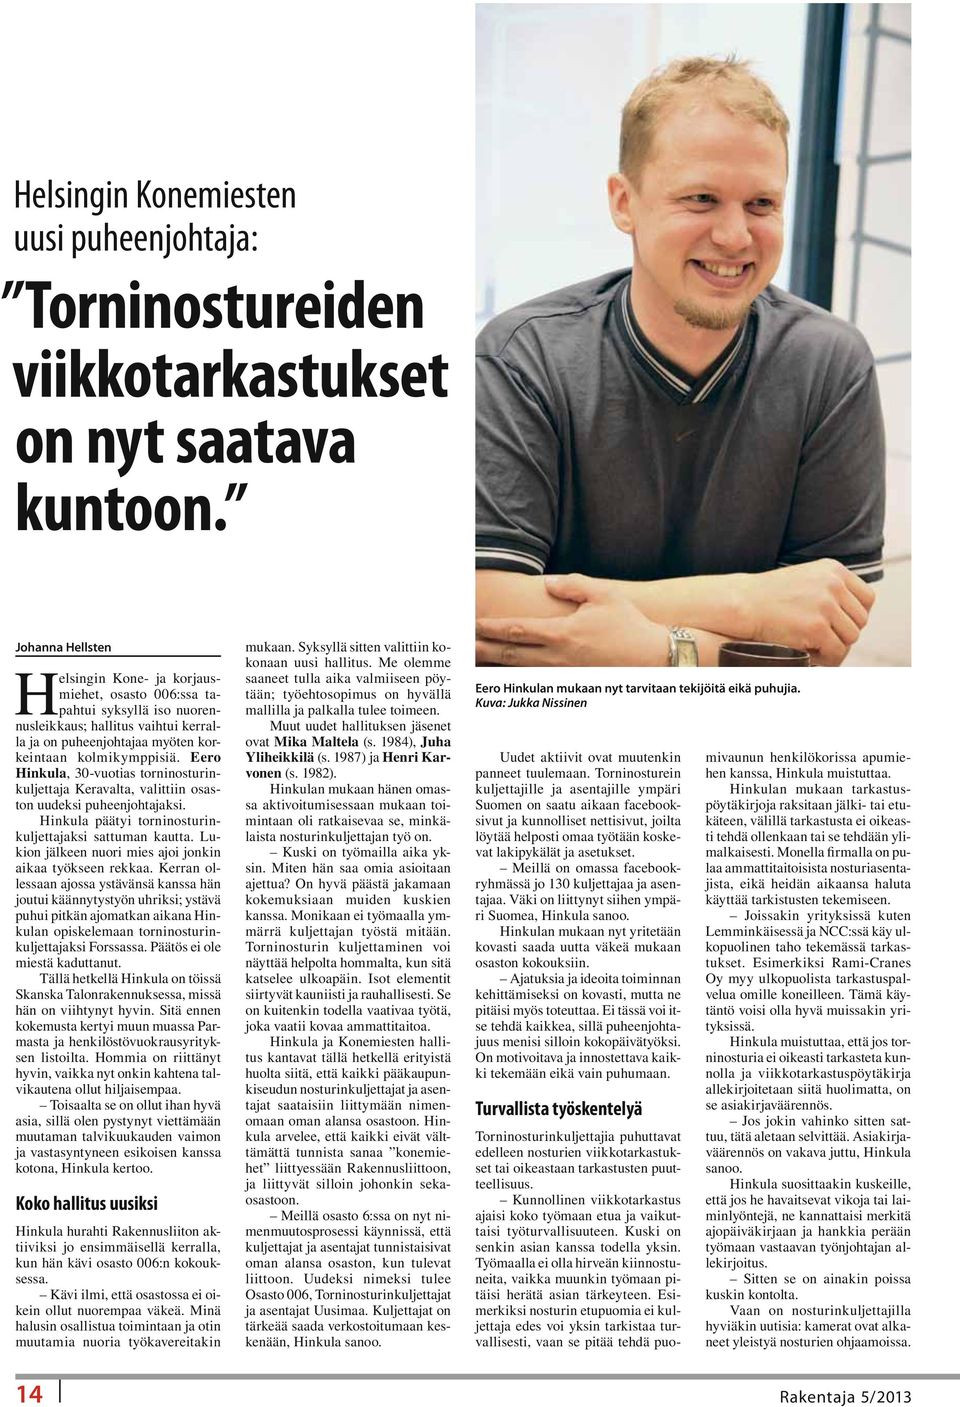 Eero Hinkula, 30-vuotias torninosturinkuljettaja Keravalta, valittiin osaston uudeksi puheenjohtajaksi. Hinkula päätyi torninosturinkuljettajaksi sattuman kautta.